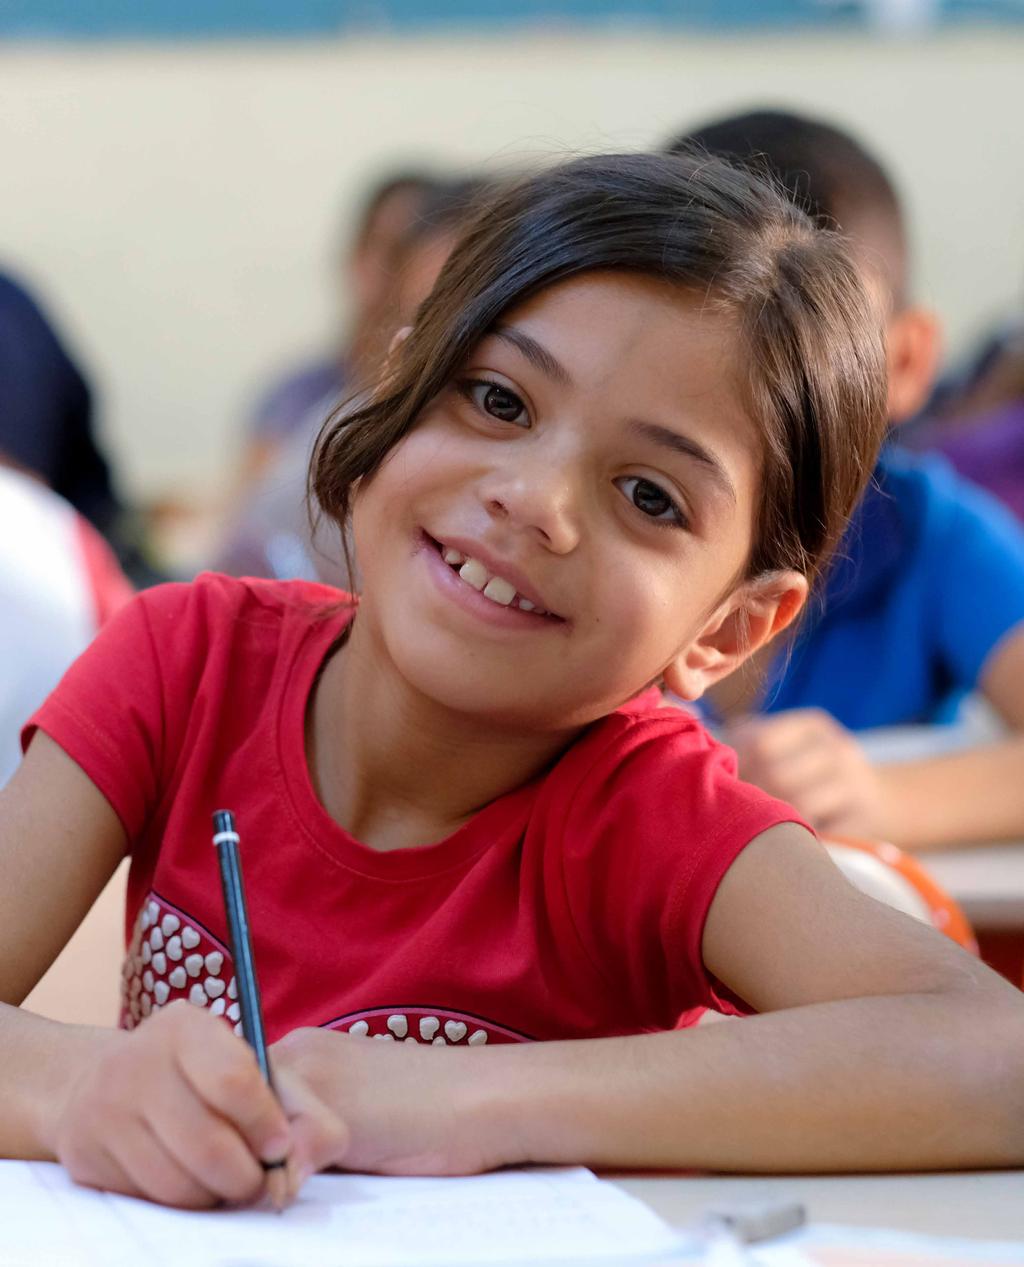 EĞİTİM ALANINDA ÜLKE PROGRAMI SONUÇLARI Mülteci çocuklar için 834 okul öncesi, ilköğretim ve ortaöğretim sınıfı açıldı Örgün eğitime erişim UNICEF in Milli Eğitim Bakanlığı (MEB) ile ortaklığı,